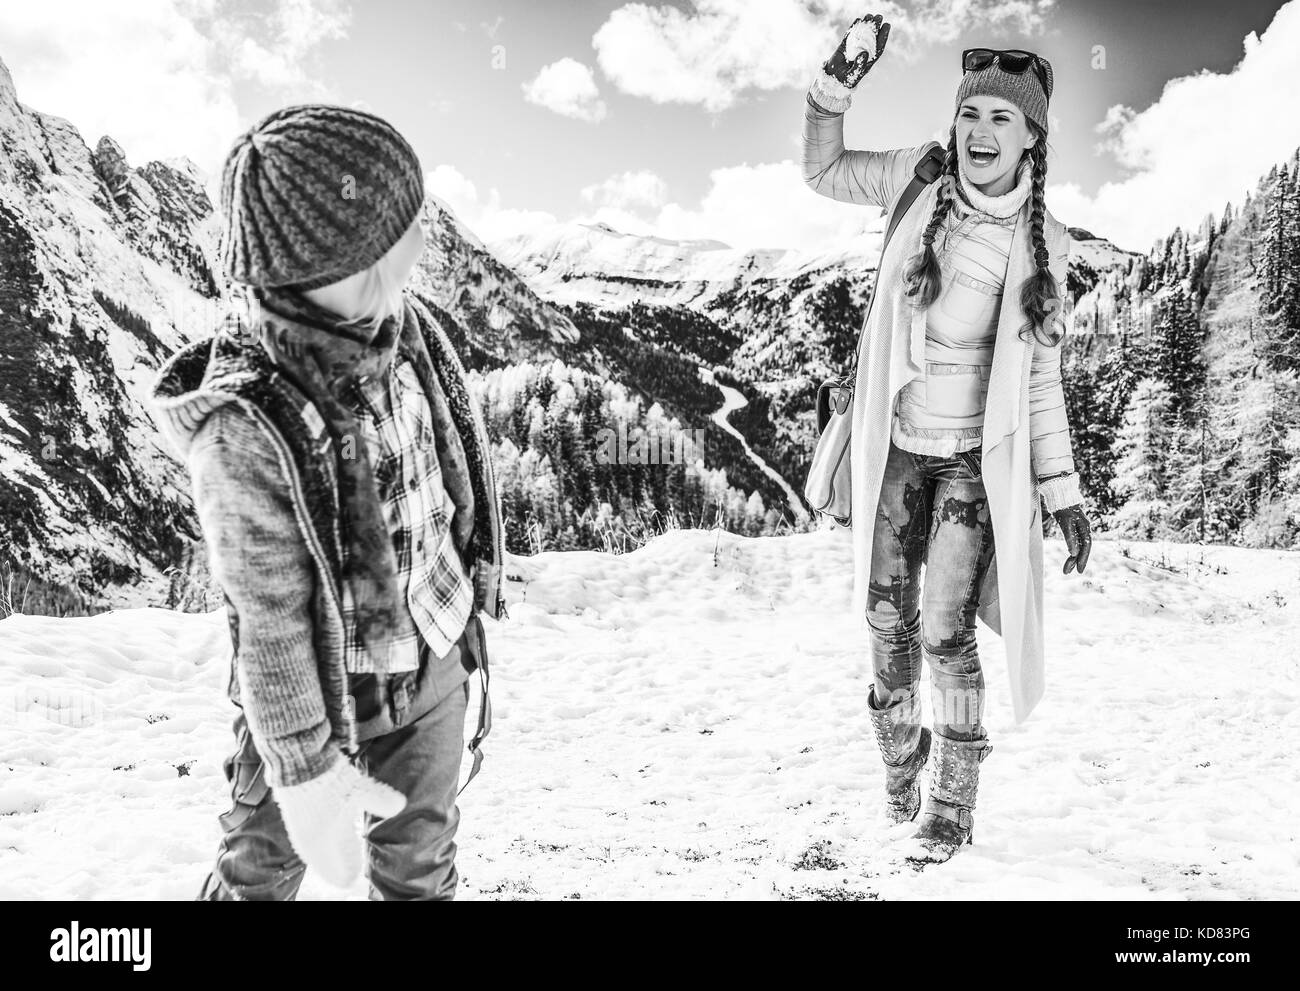 Winter auf höherer Ebene Spaß. Moderne Mutter und Kind Reisenden vor Bergkulisse in Alto Adige, Italien spielt Schneebälle Stockfoto